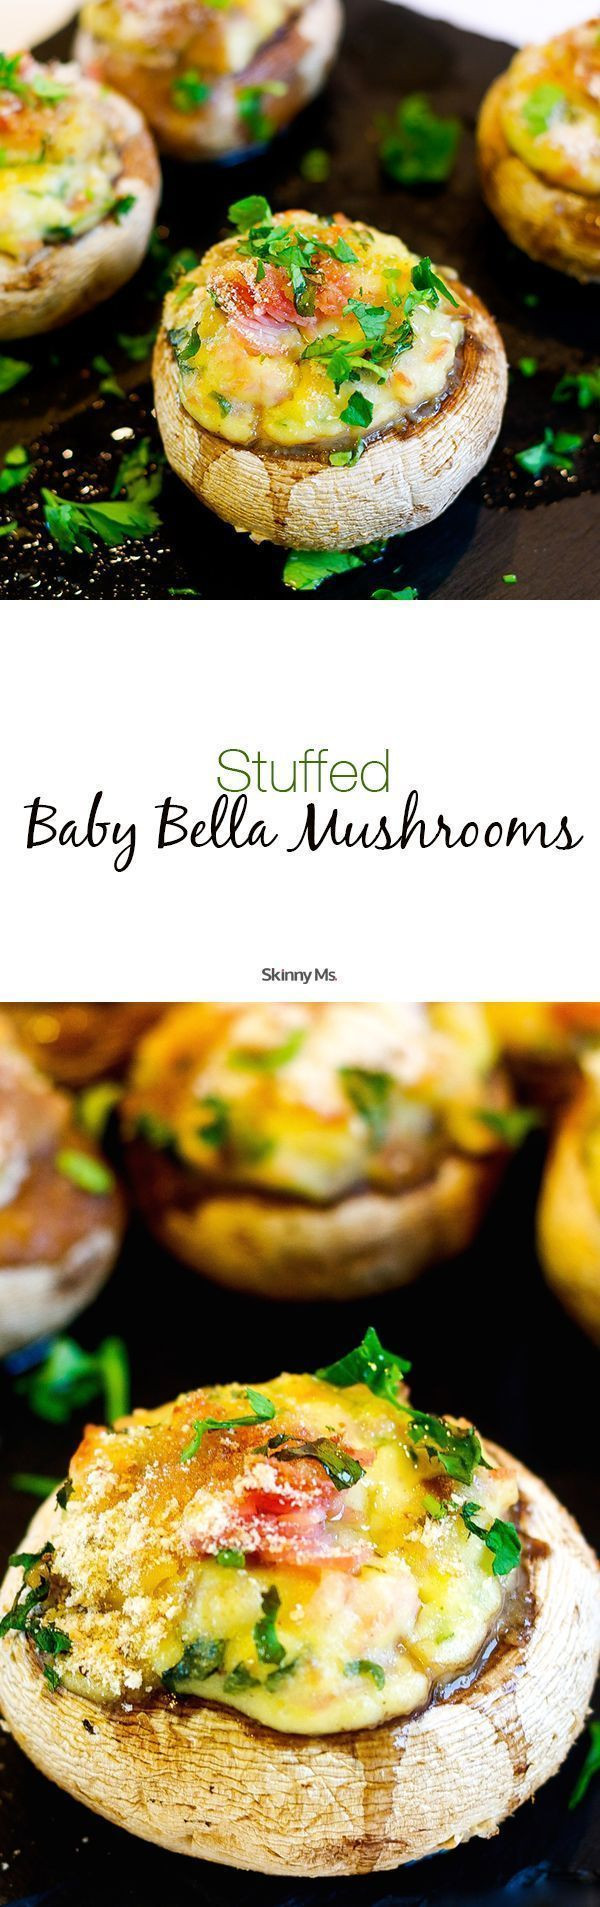 Baby Bella Mushrooms Recipes
 Stuffed Baby Bella Mushrooms Recipe